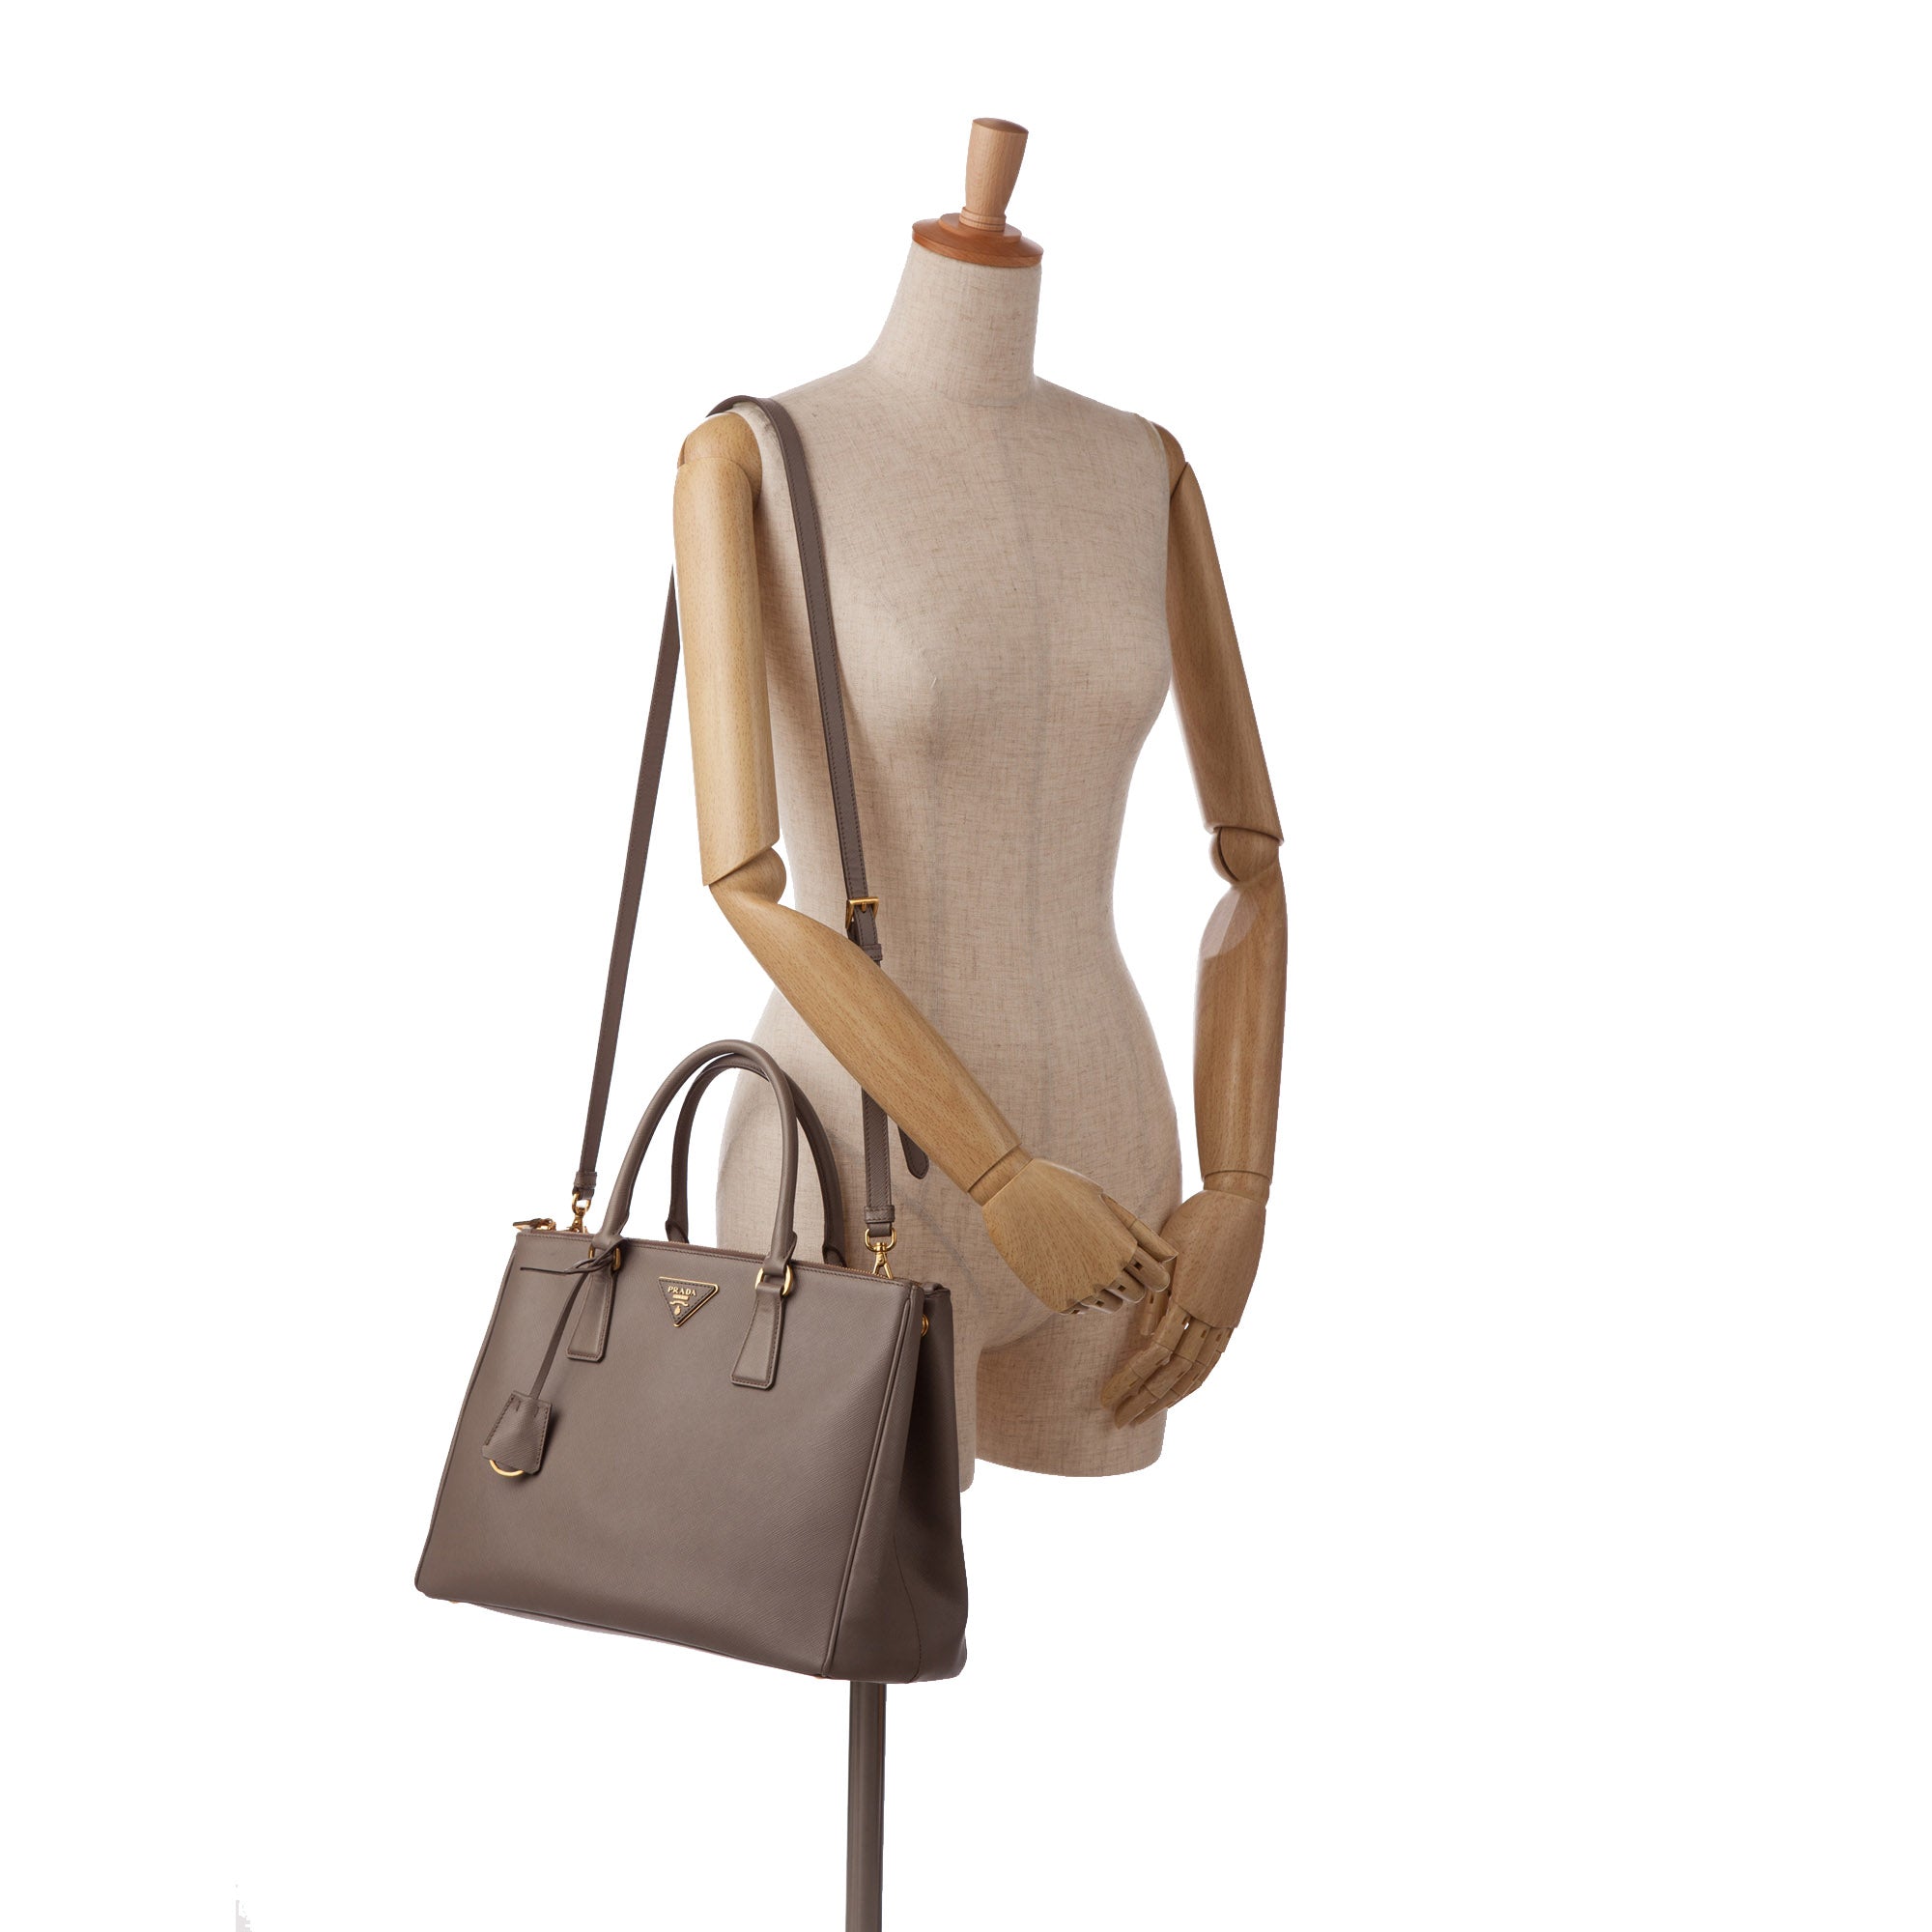 Prada - Prada Galleria Saffiano Leather Medium size on Designer